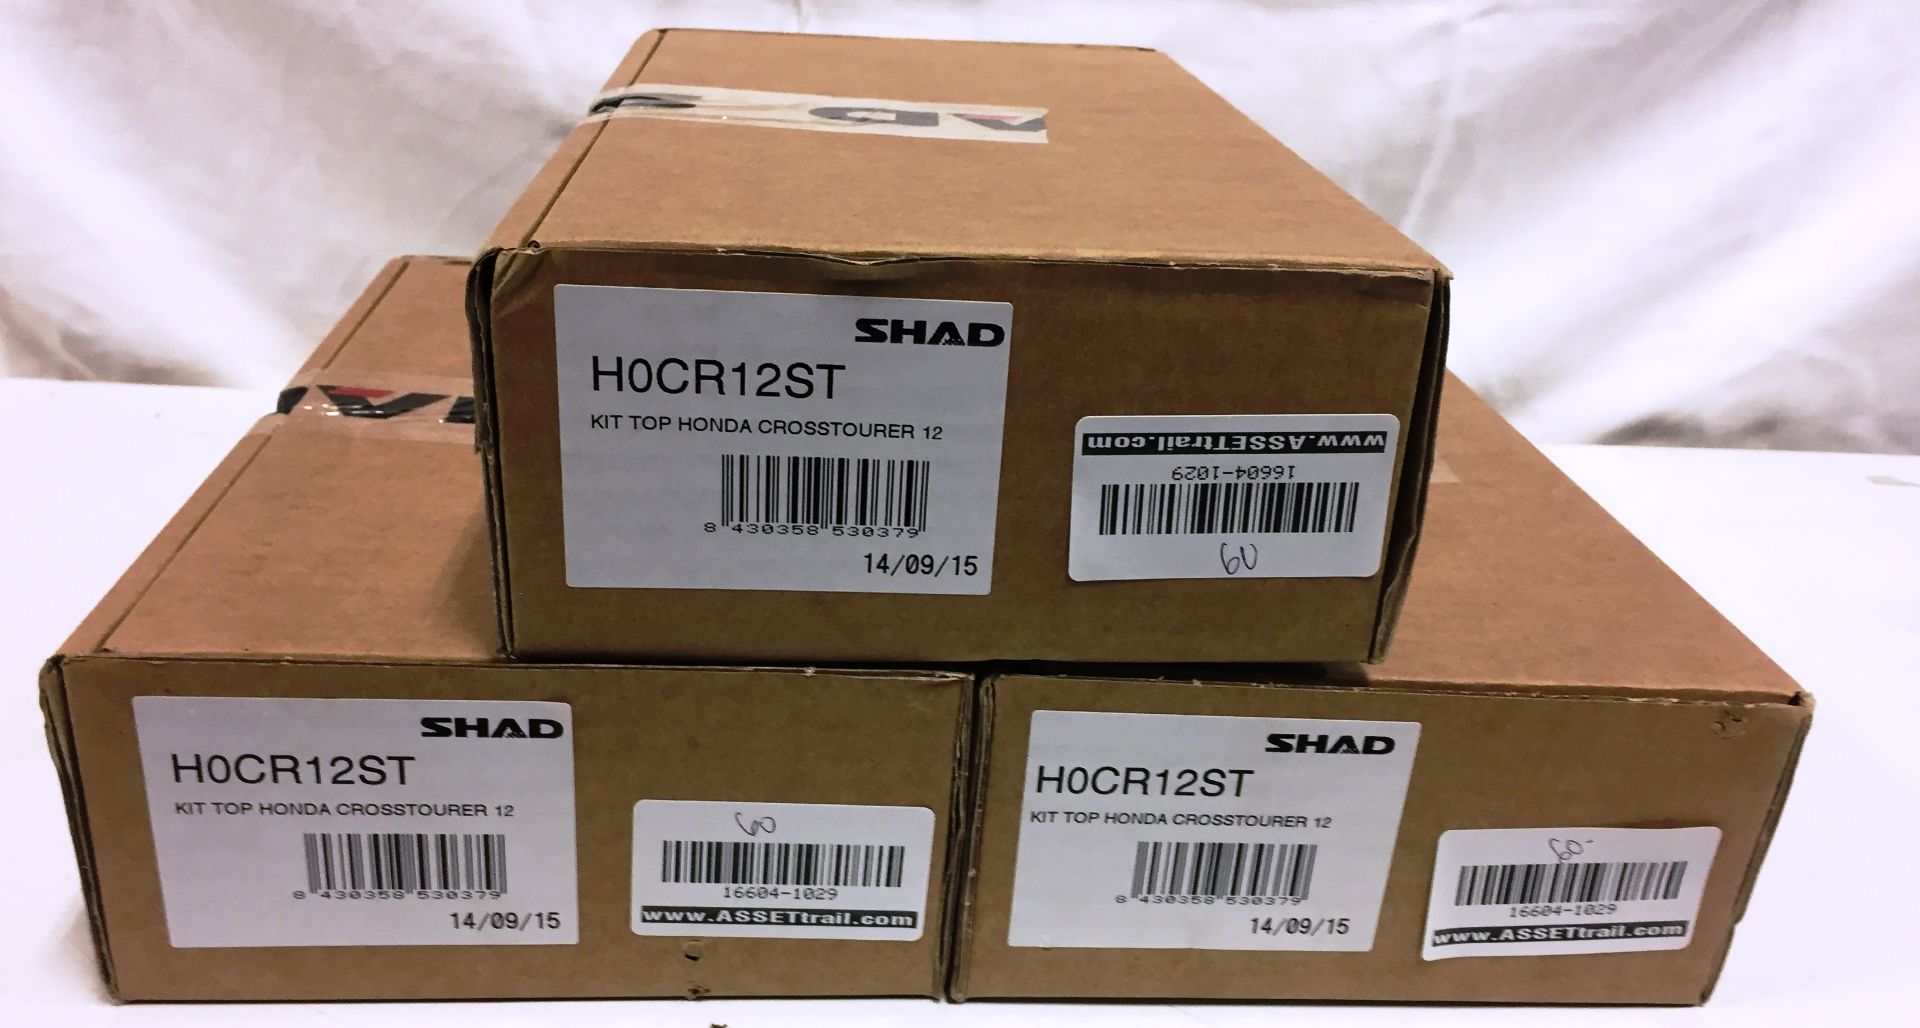 3 x Shad Top Case Fitting Kit for Honda Crosstourer |H0CR12ST| Black | RRP£19.99 each